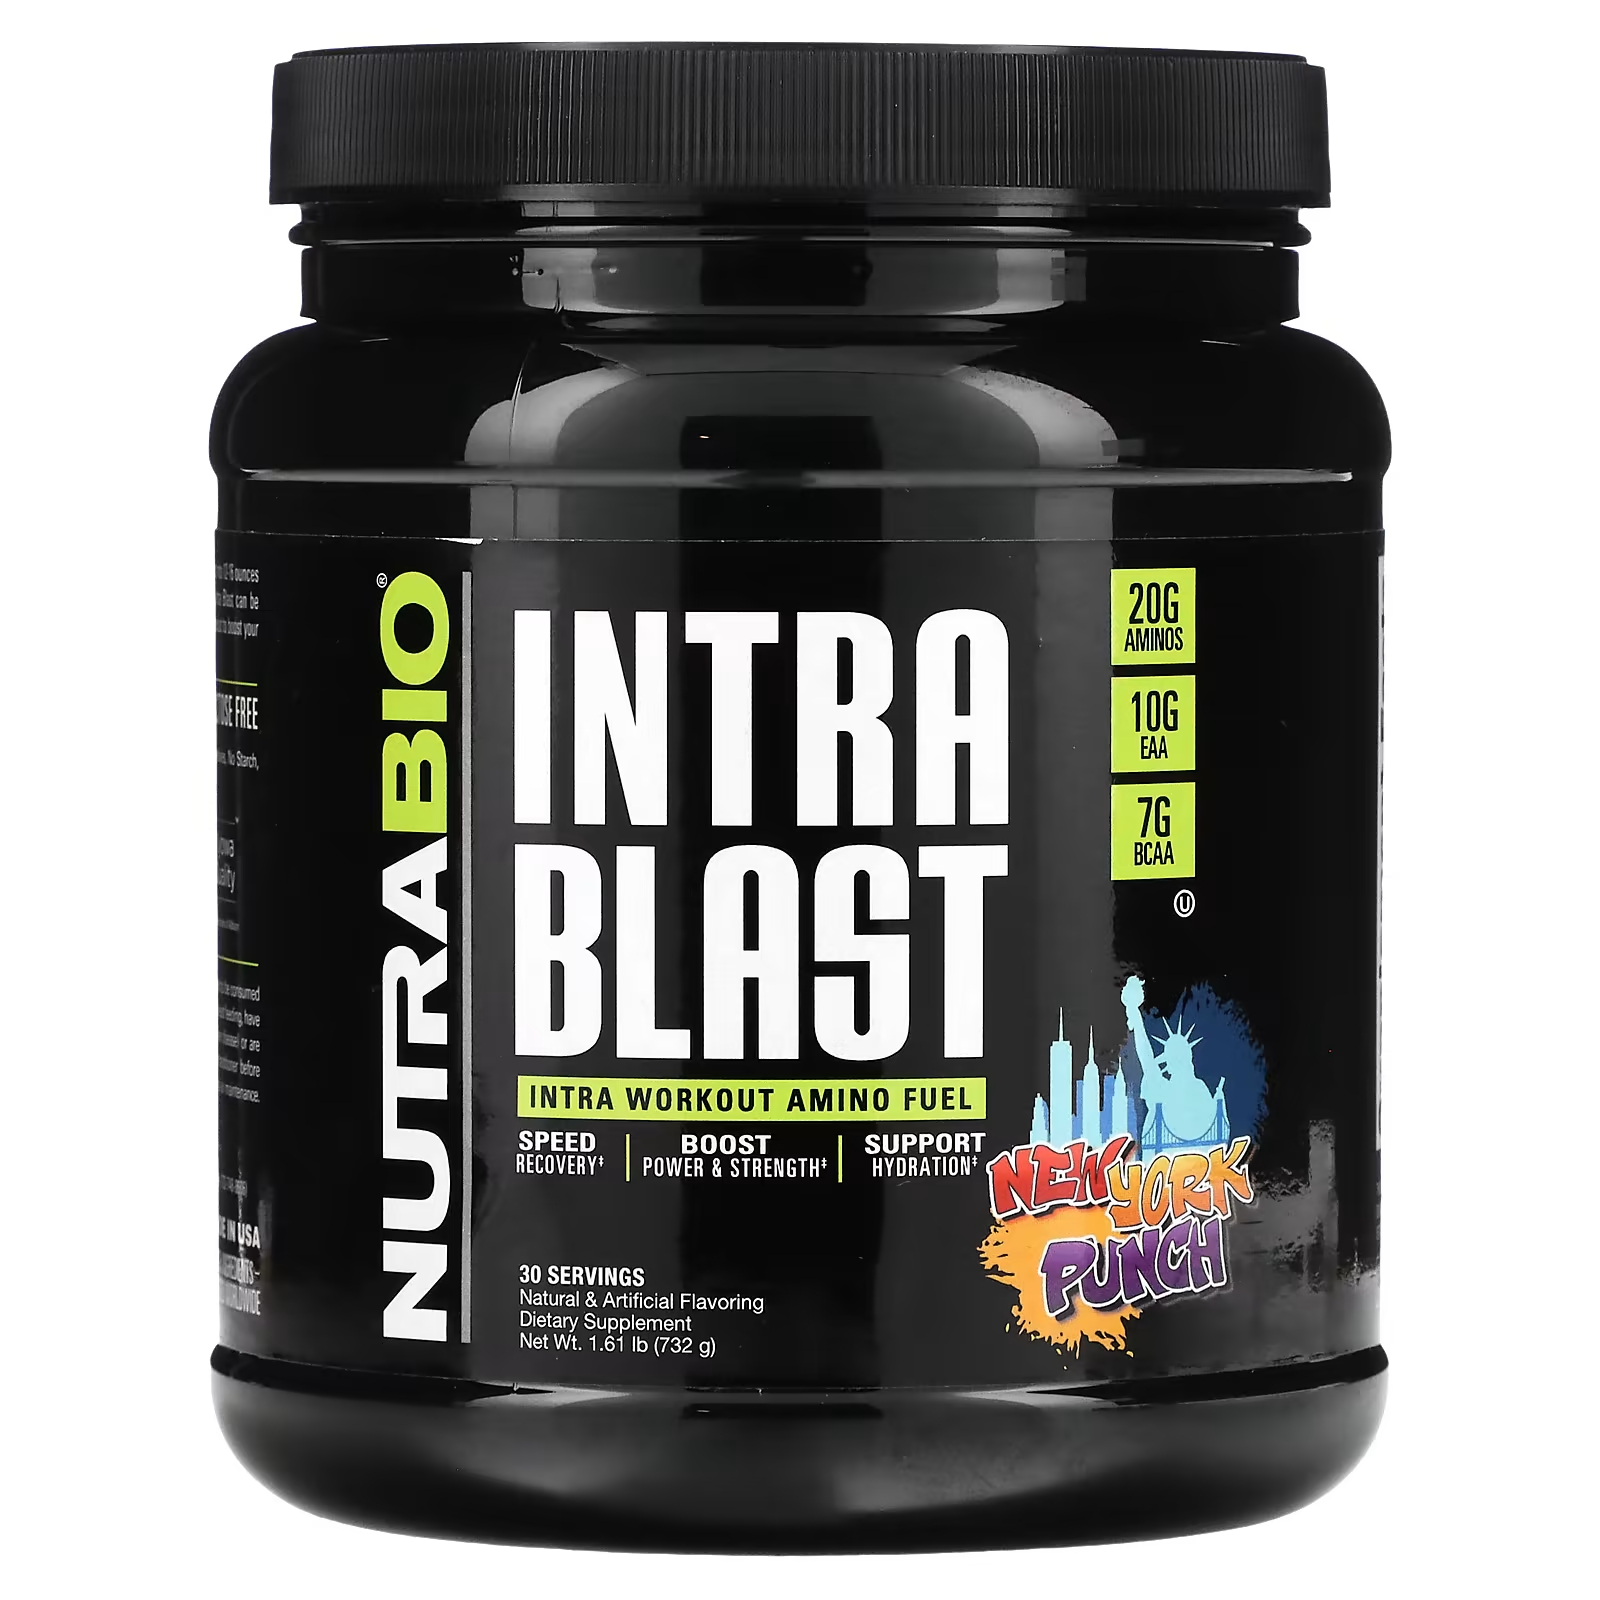 Пищевая добавка NutraBio Intra Blast Intra Workout Muscle Fuel New York Punch заряд аминокислот для восстановления после тренировки nutrabio intra blast клубника с лимоном 740 г